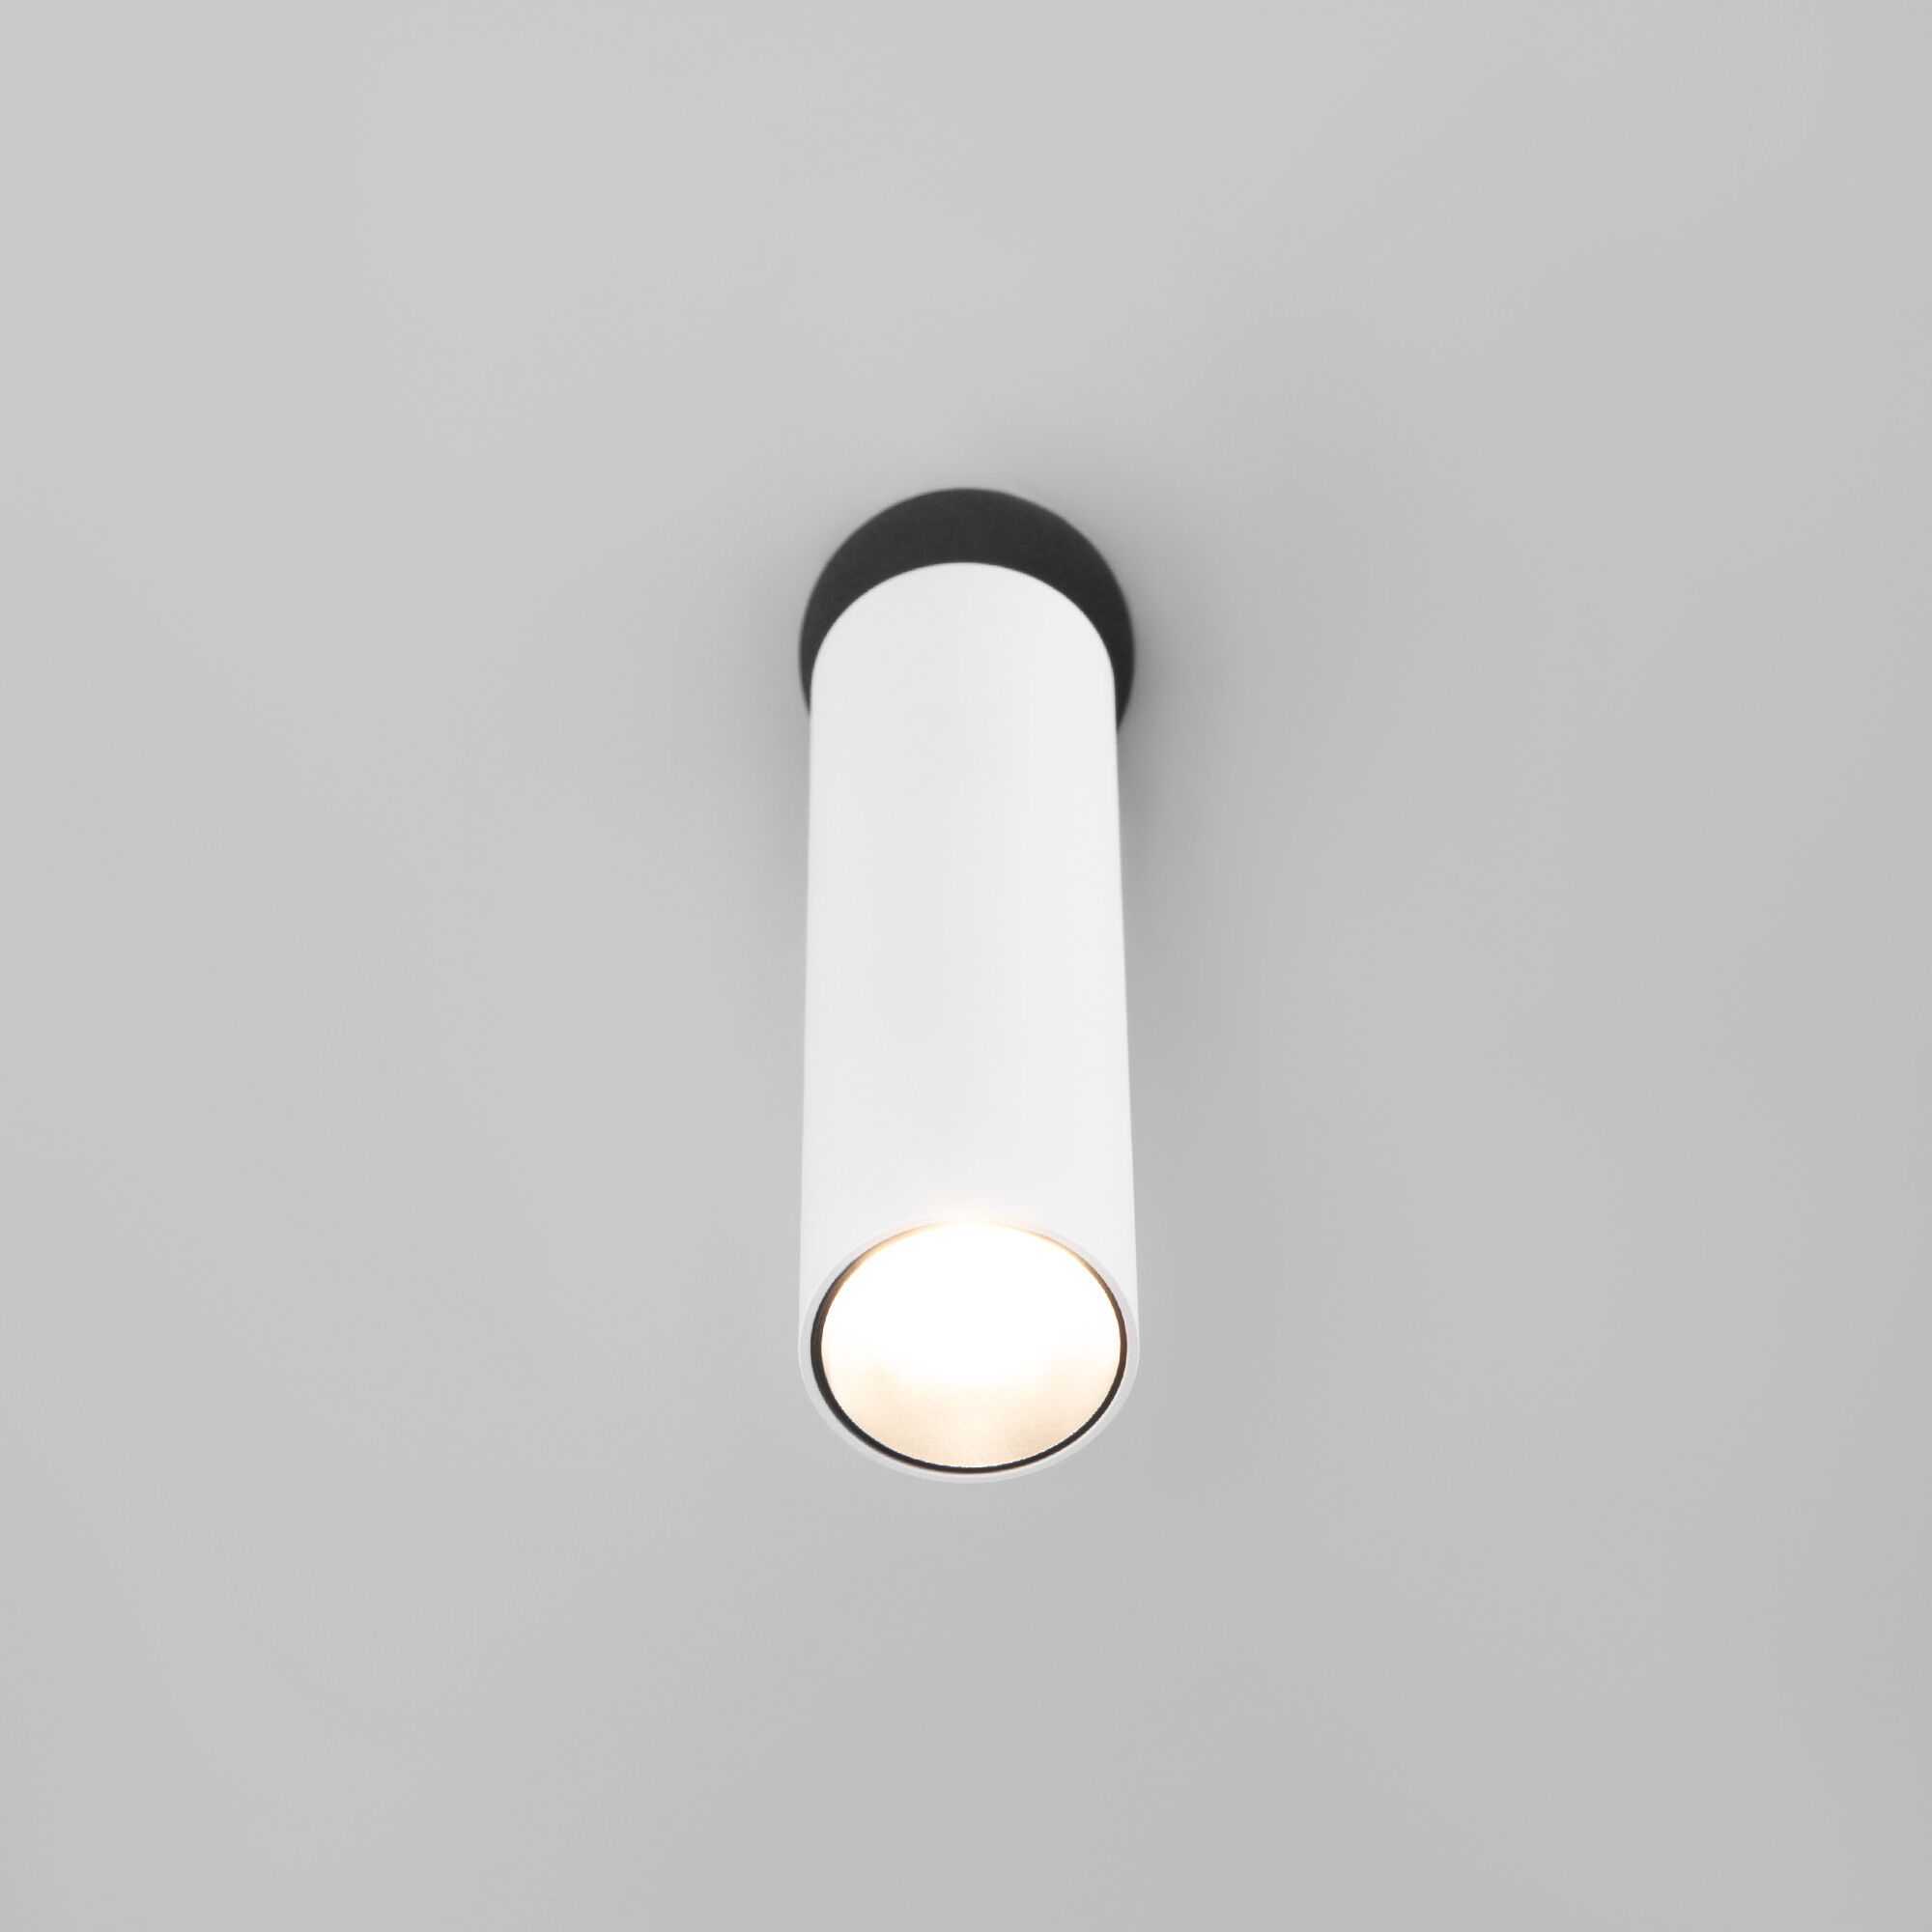 Настенный светодиодный светильник в стиле минимализм Eurosvet Ease 20128/1 LED белый/черный. Фото 3